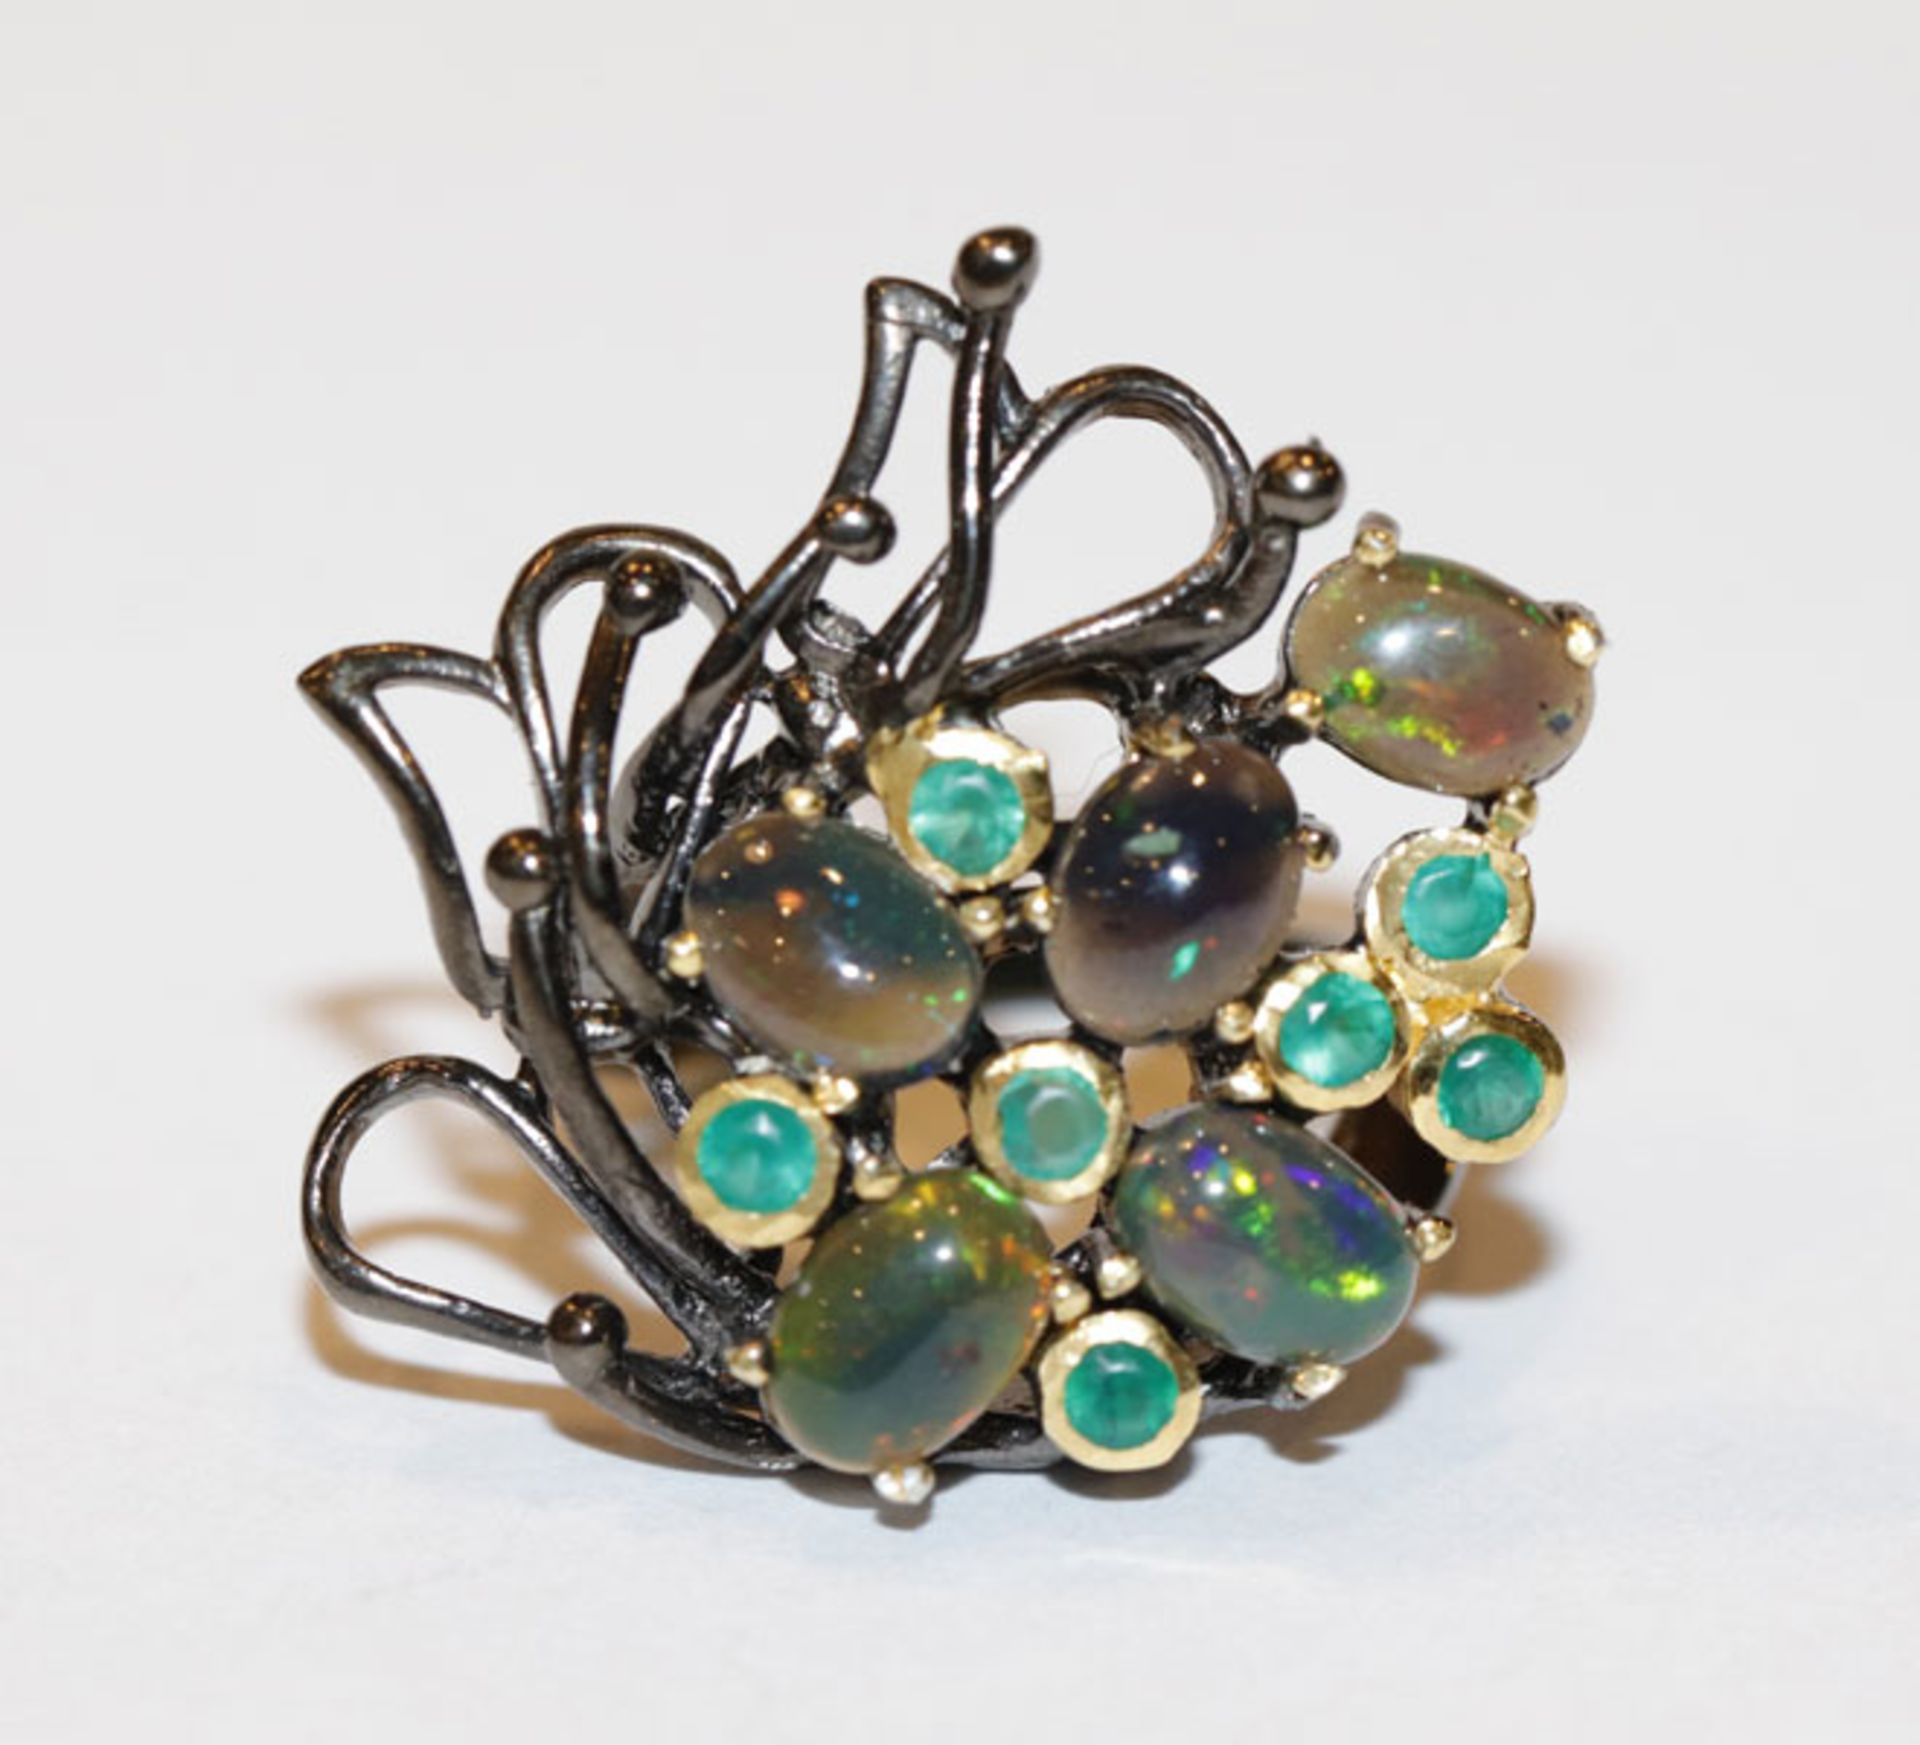 Silber Designer Ring mit Opalen und in Gold gefaßten Smaragden, Gr. 49, ausgefallene Handarbeit